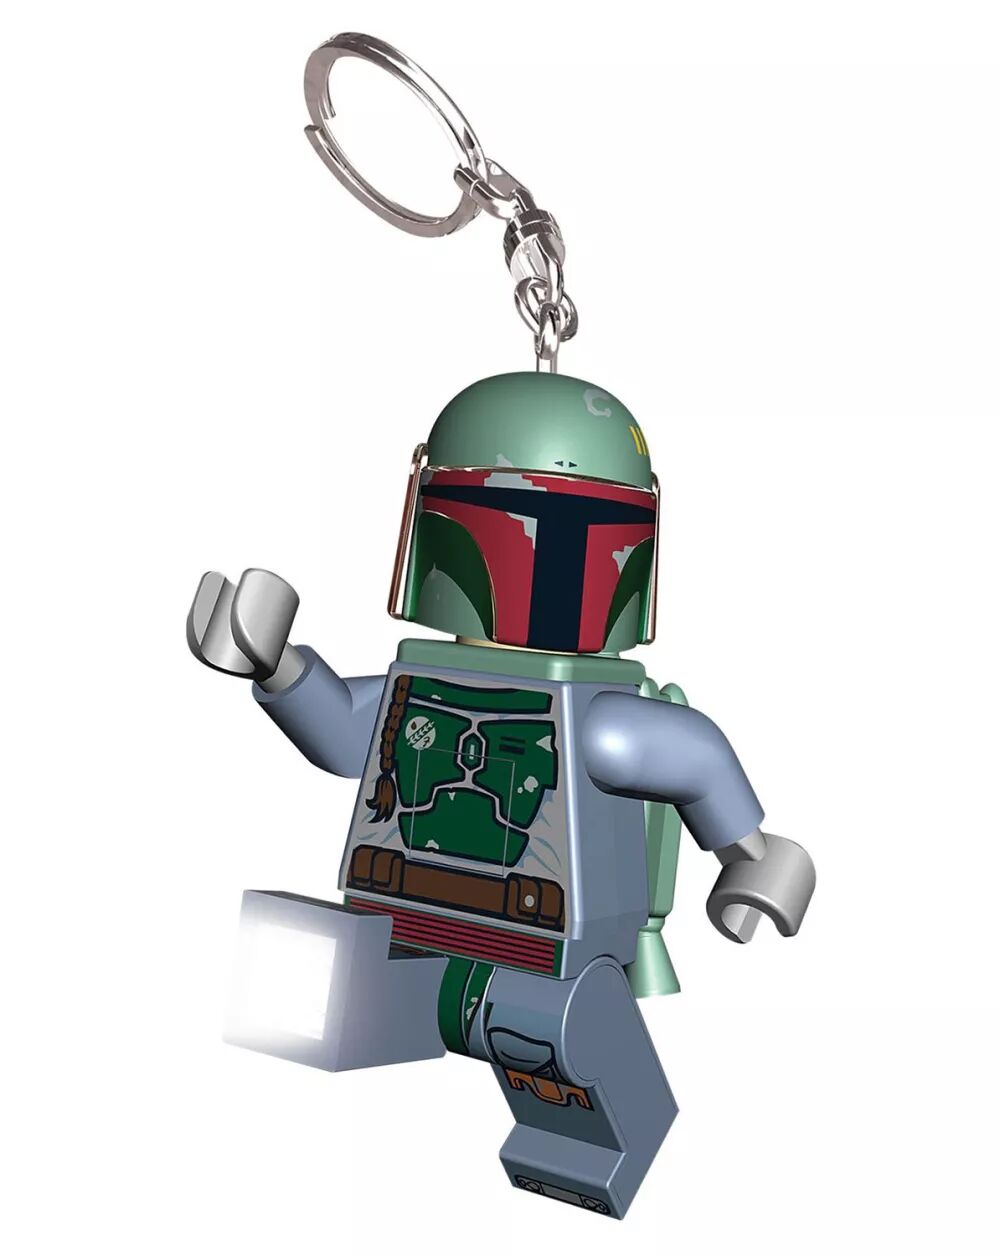 LEGO Star Wars Boba Fett LED Schlüsselanhänger